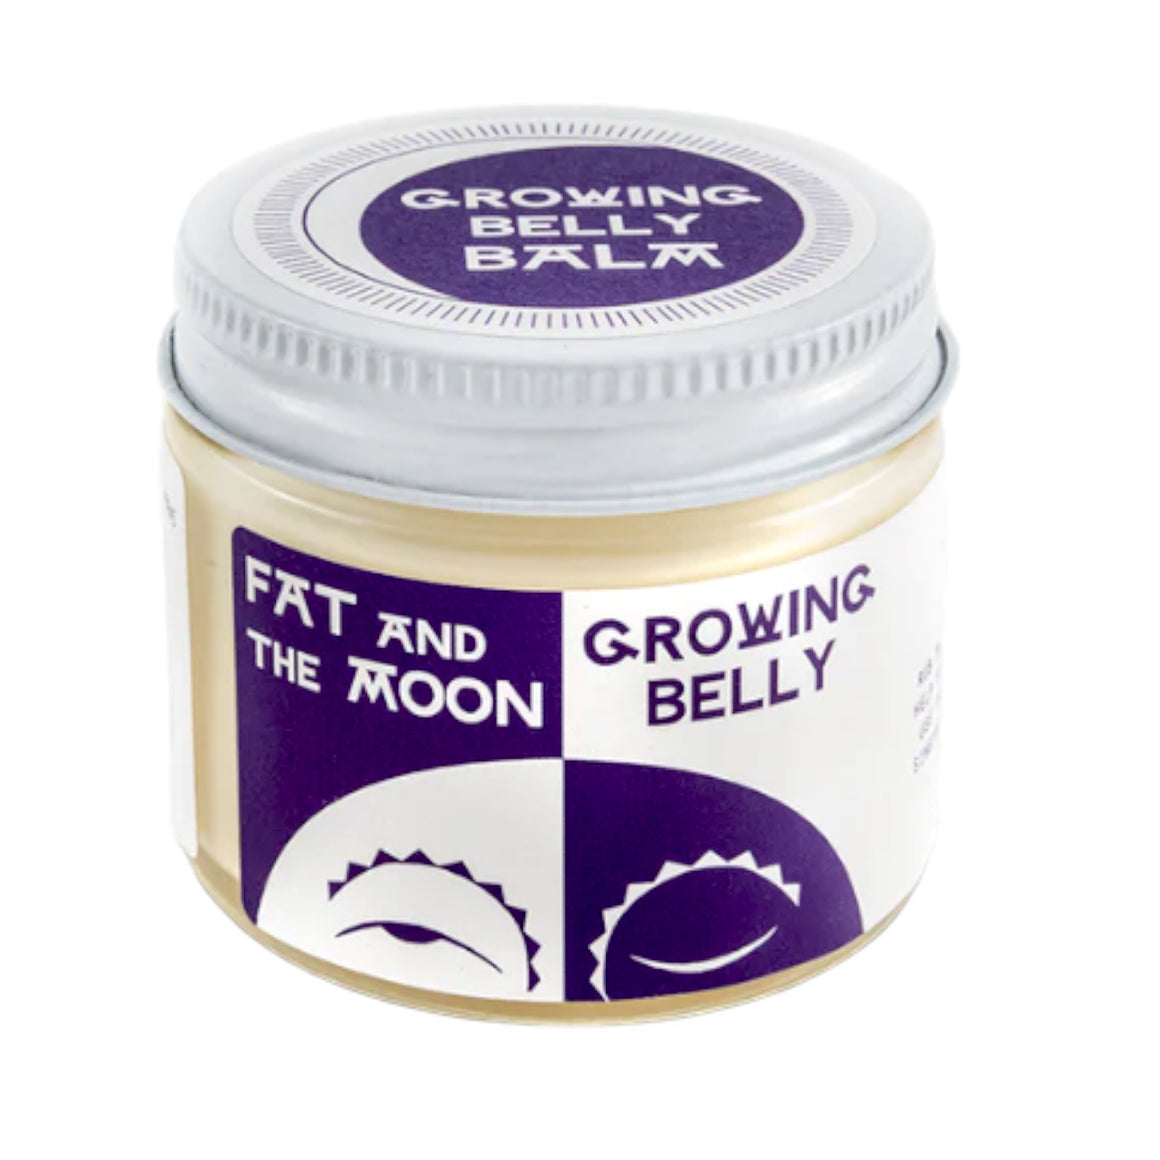 Growing Belly Balm 2oz/60ml - Tłuszcz i Księżyc